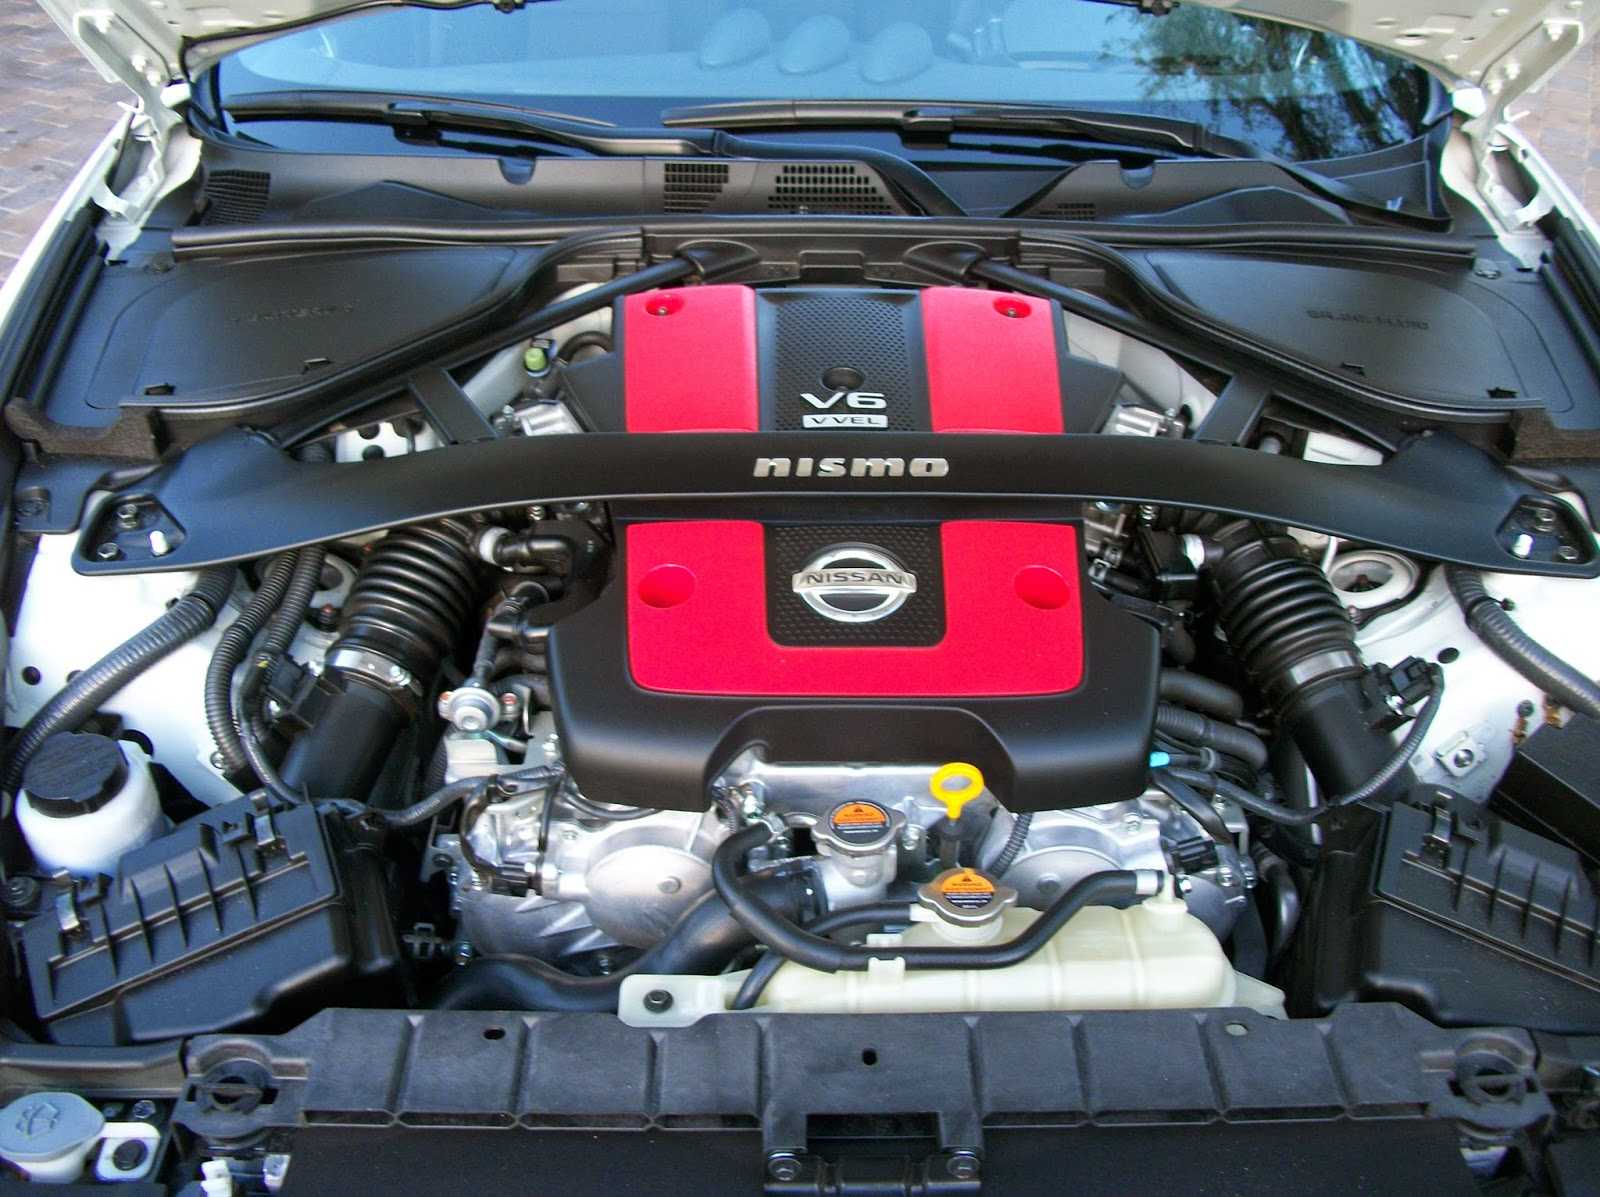 Двигатель nissan vq35de, технические характеристики, какое масло лить, ремонт двигателя vq35de, доработки и тюнинг, схема устройства, рекомендации по обслуживанию